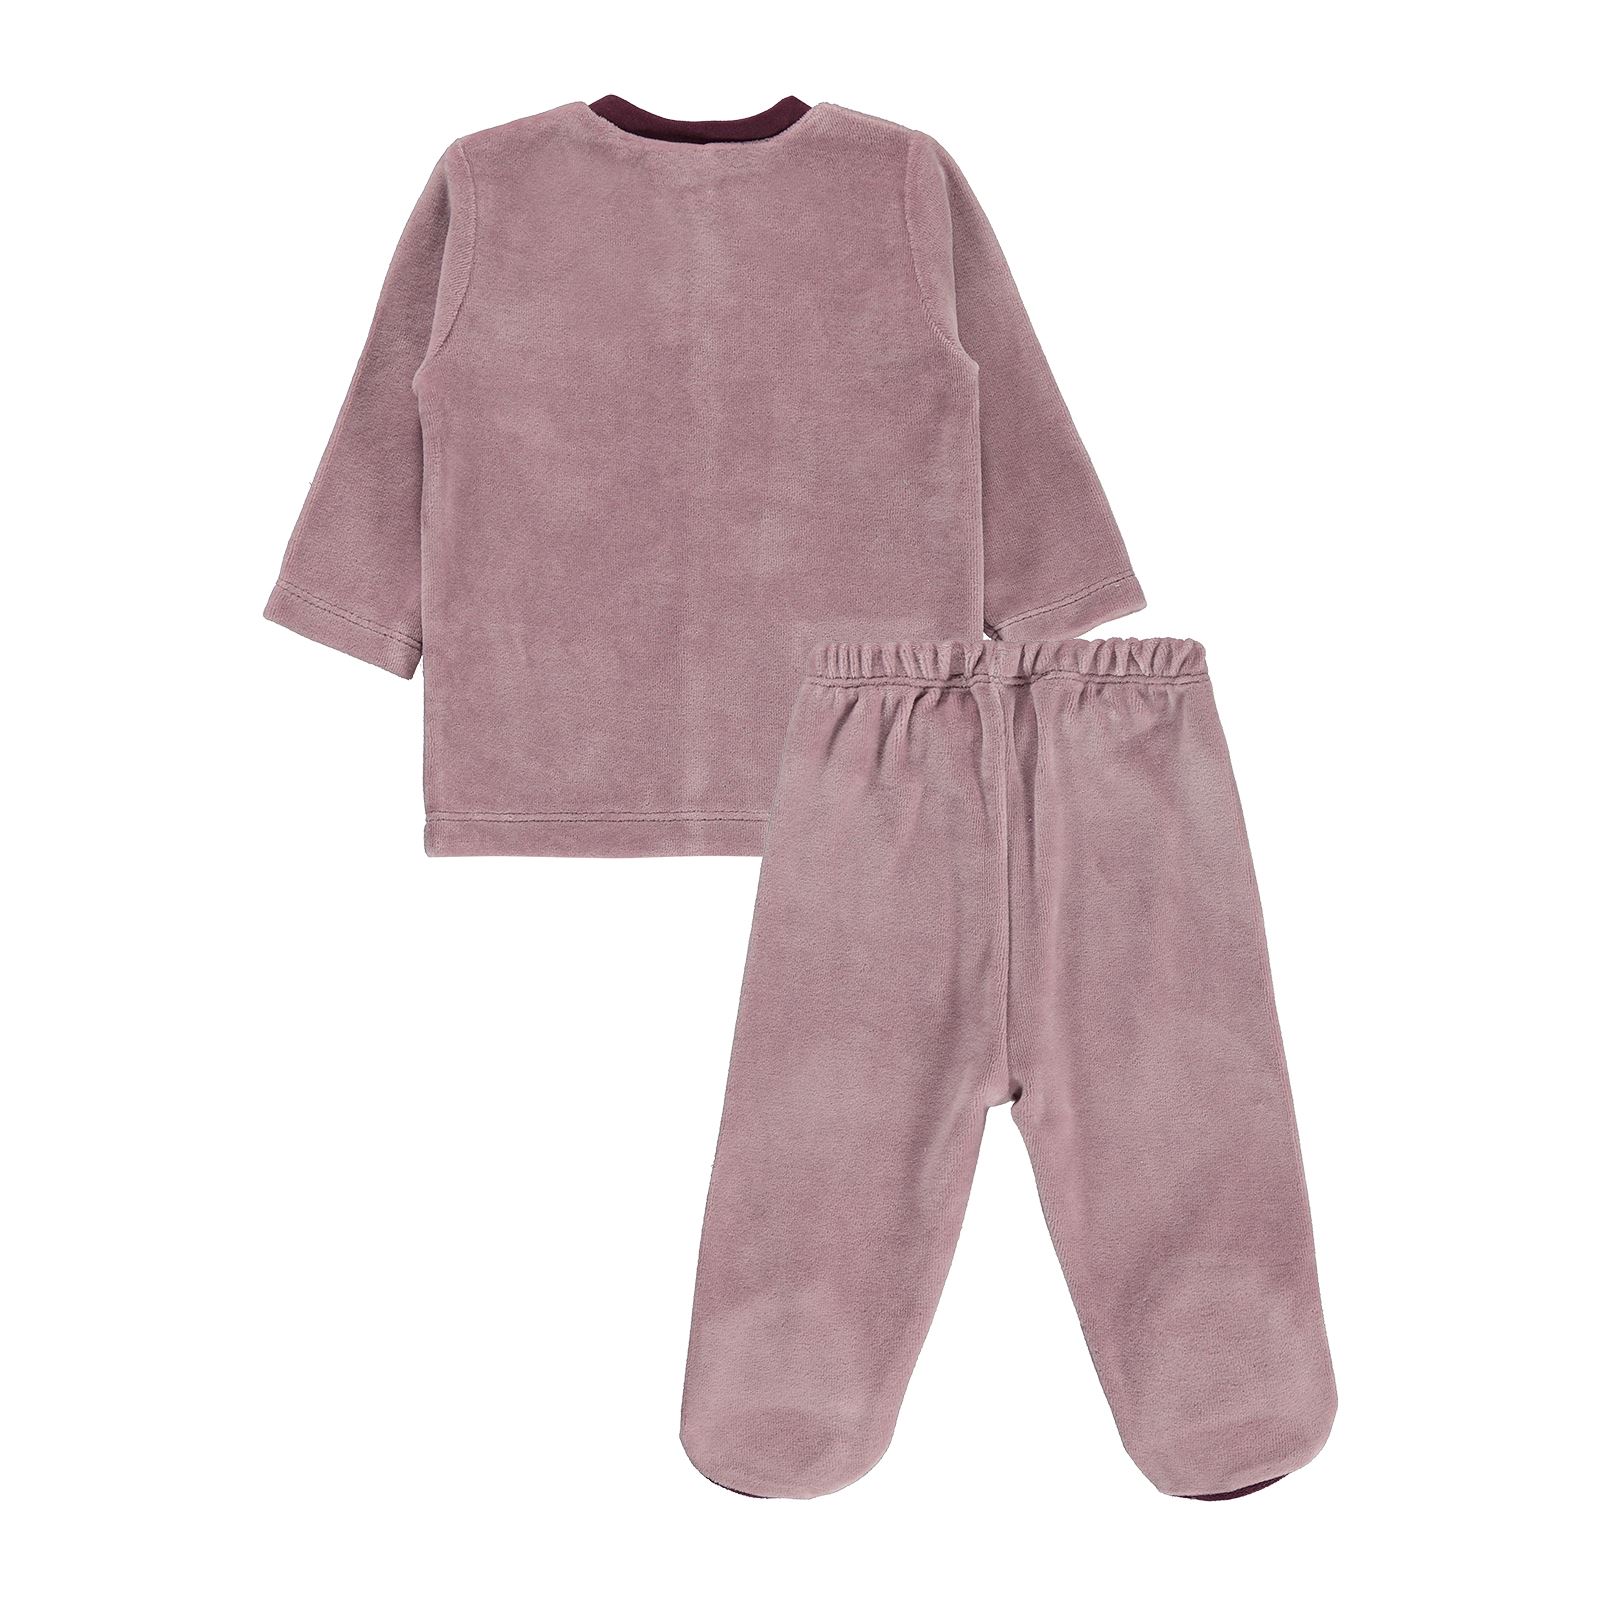 Civil Baby Kız Bebek Pijama Takımı 3-9 Ay Leylak